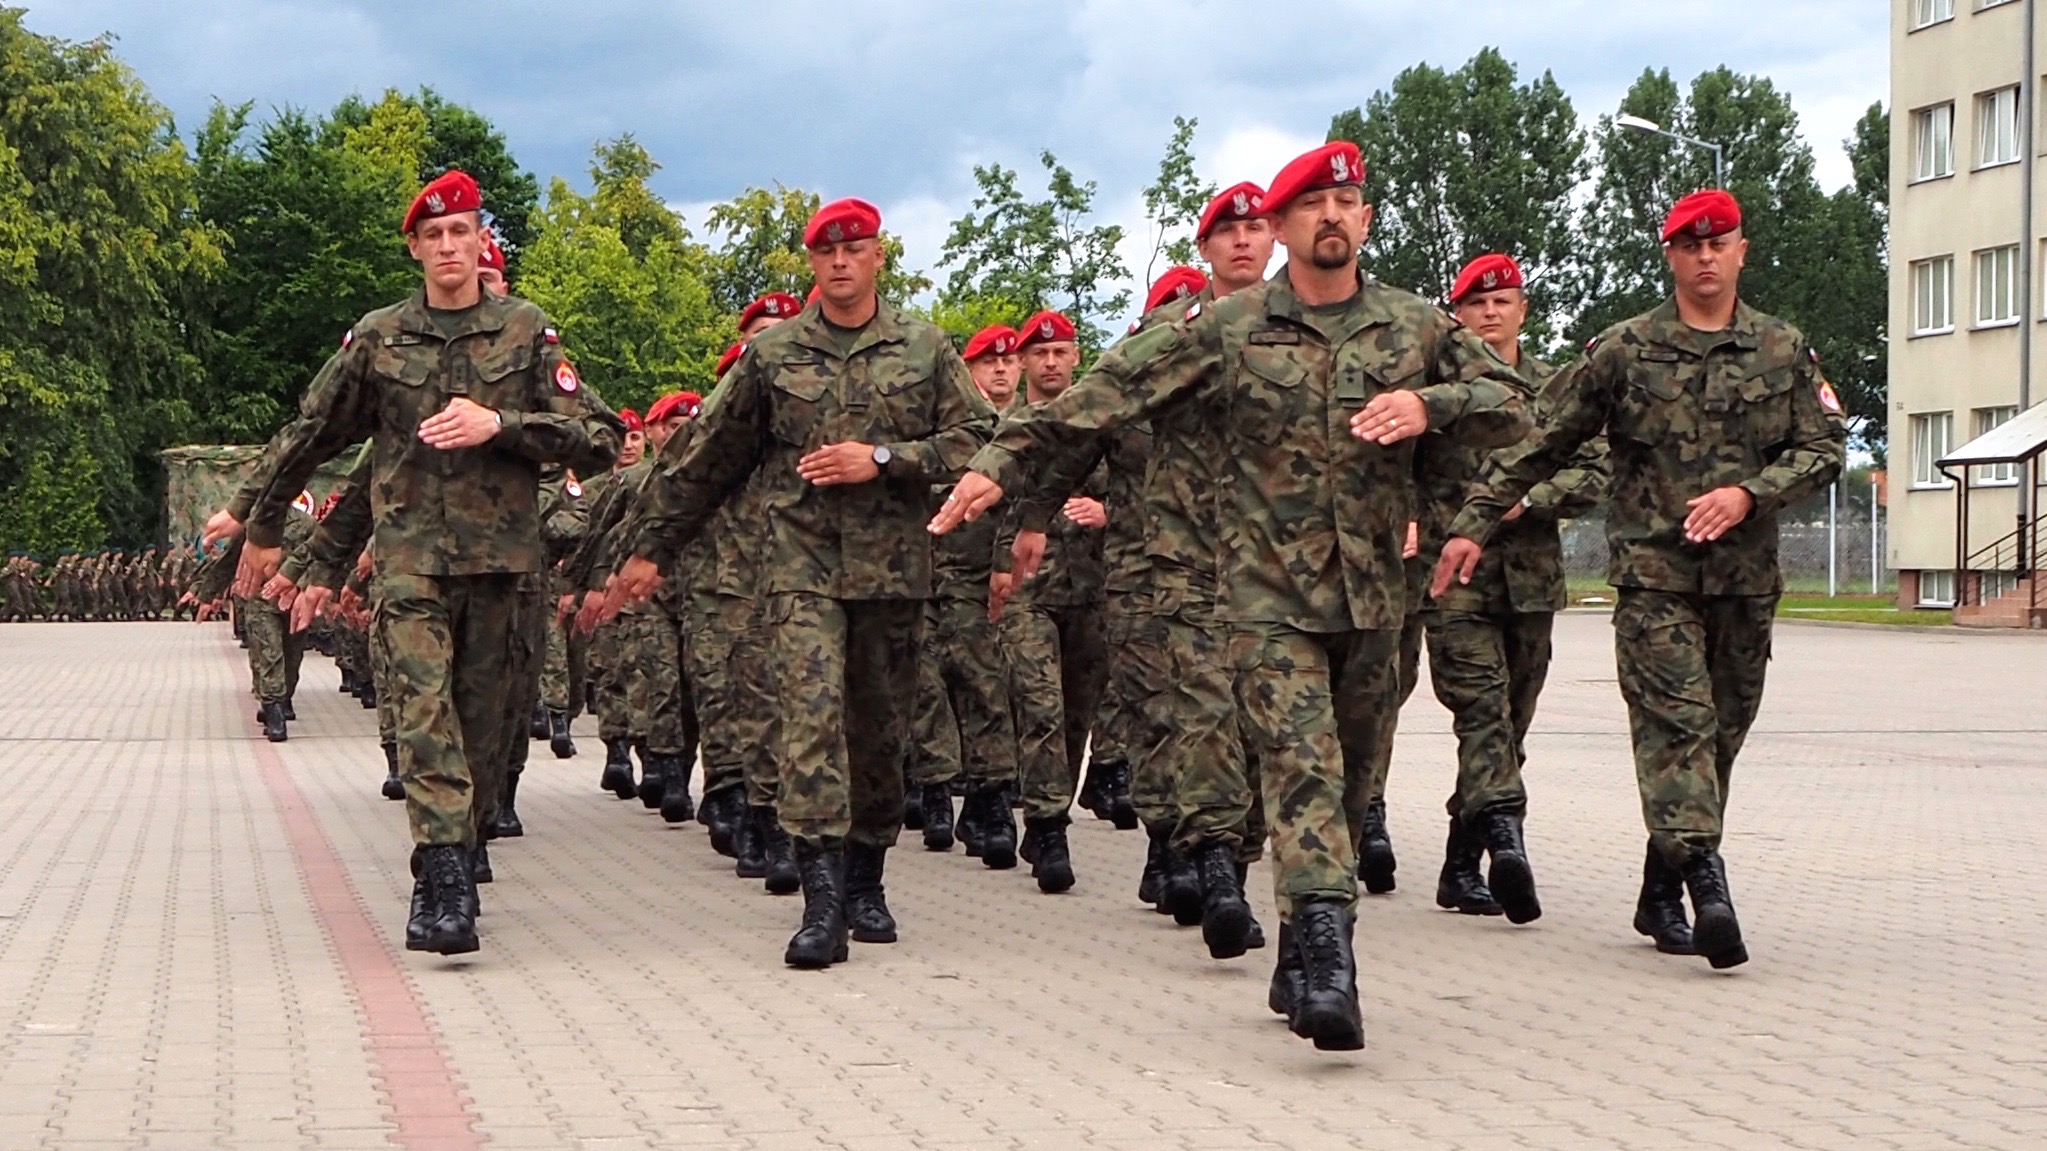 Obchody święta Żandarmerii Wojskowej. Fot. Rafał Lesiecki / Defence24.pl